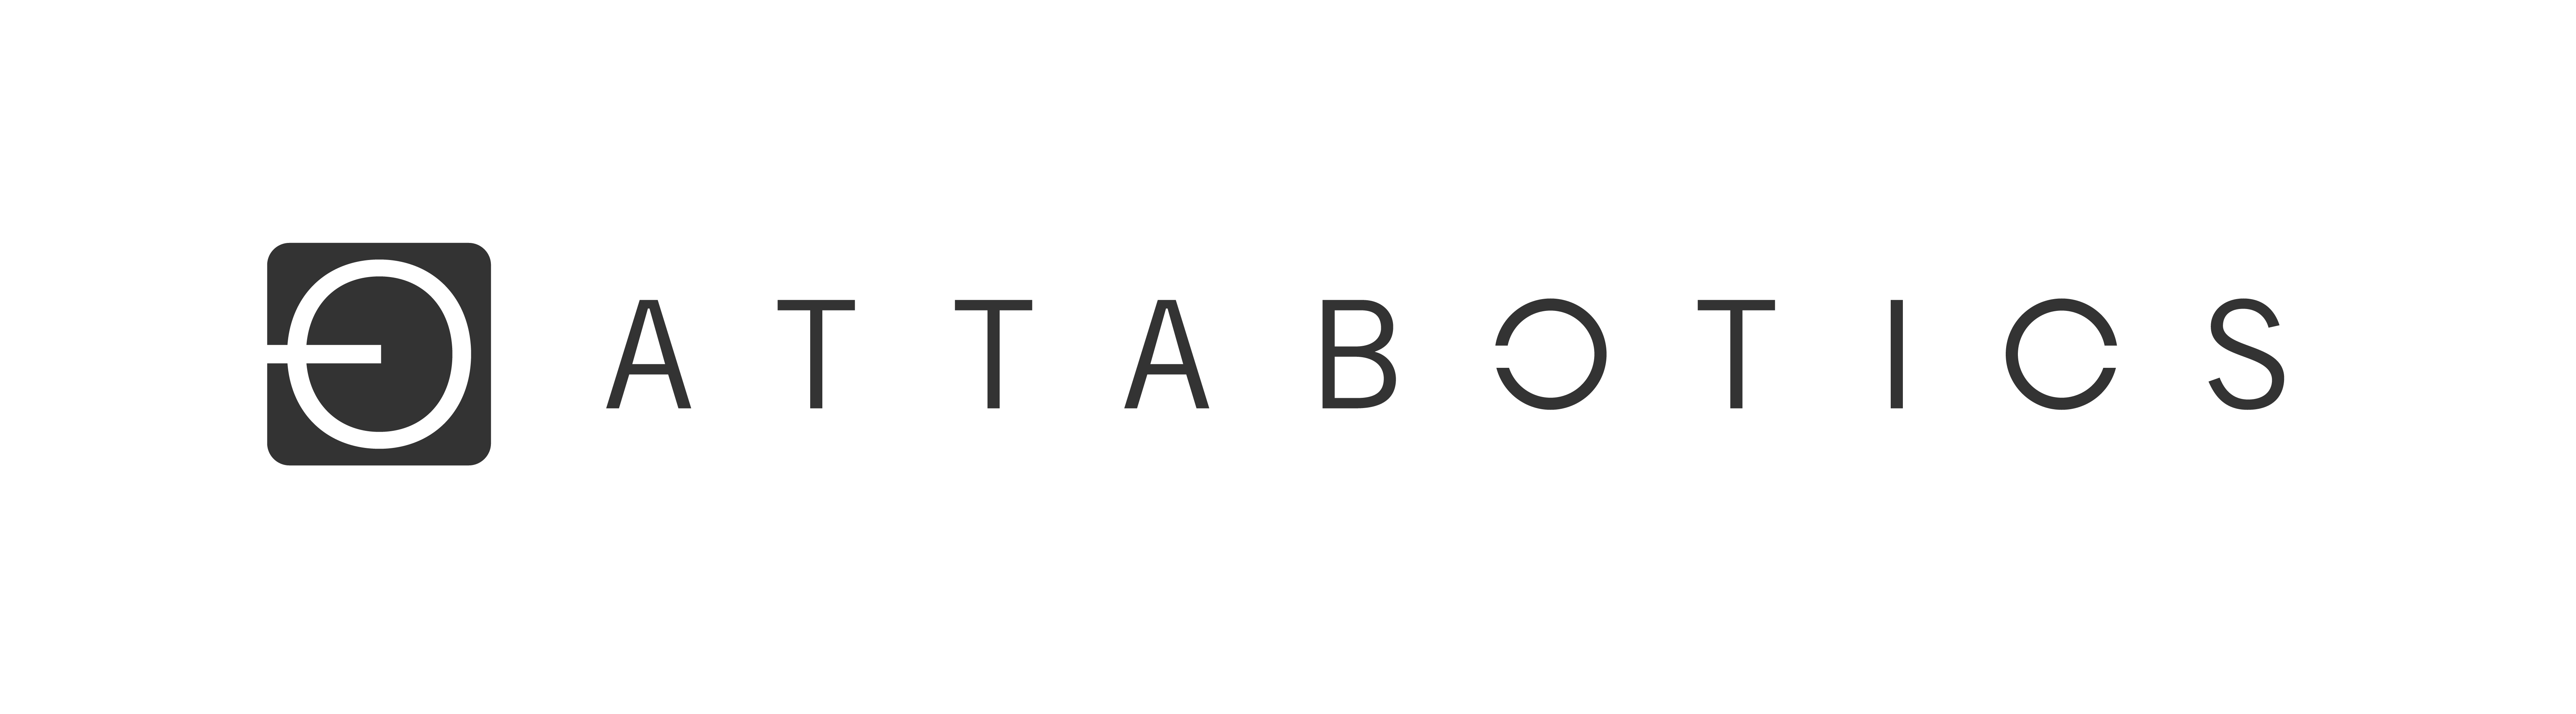 Attabotics Logo